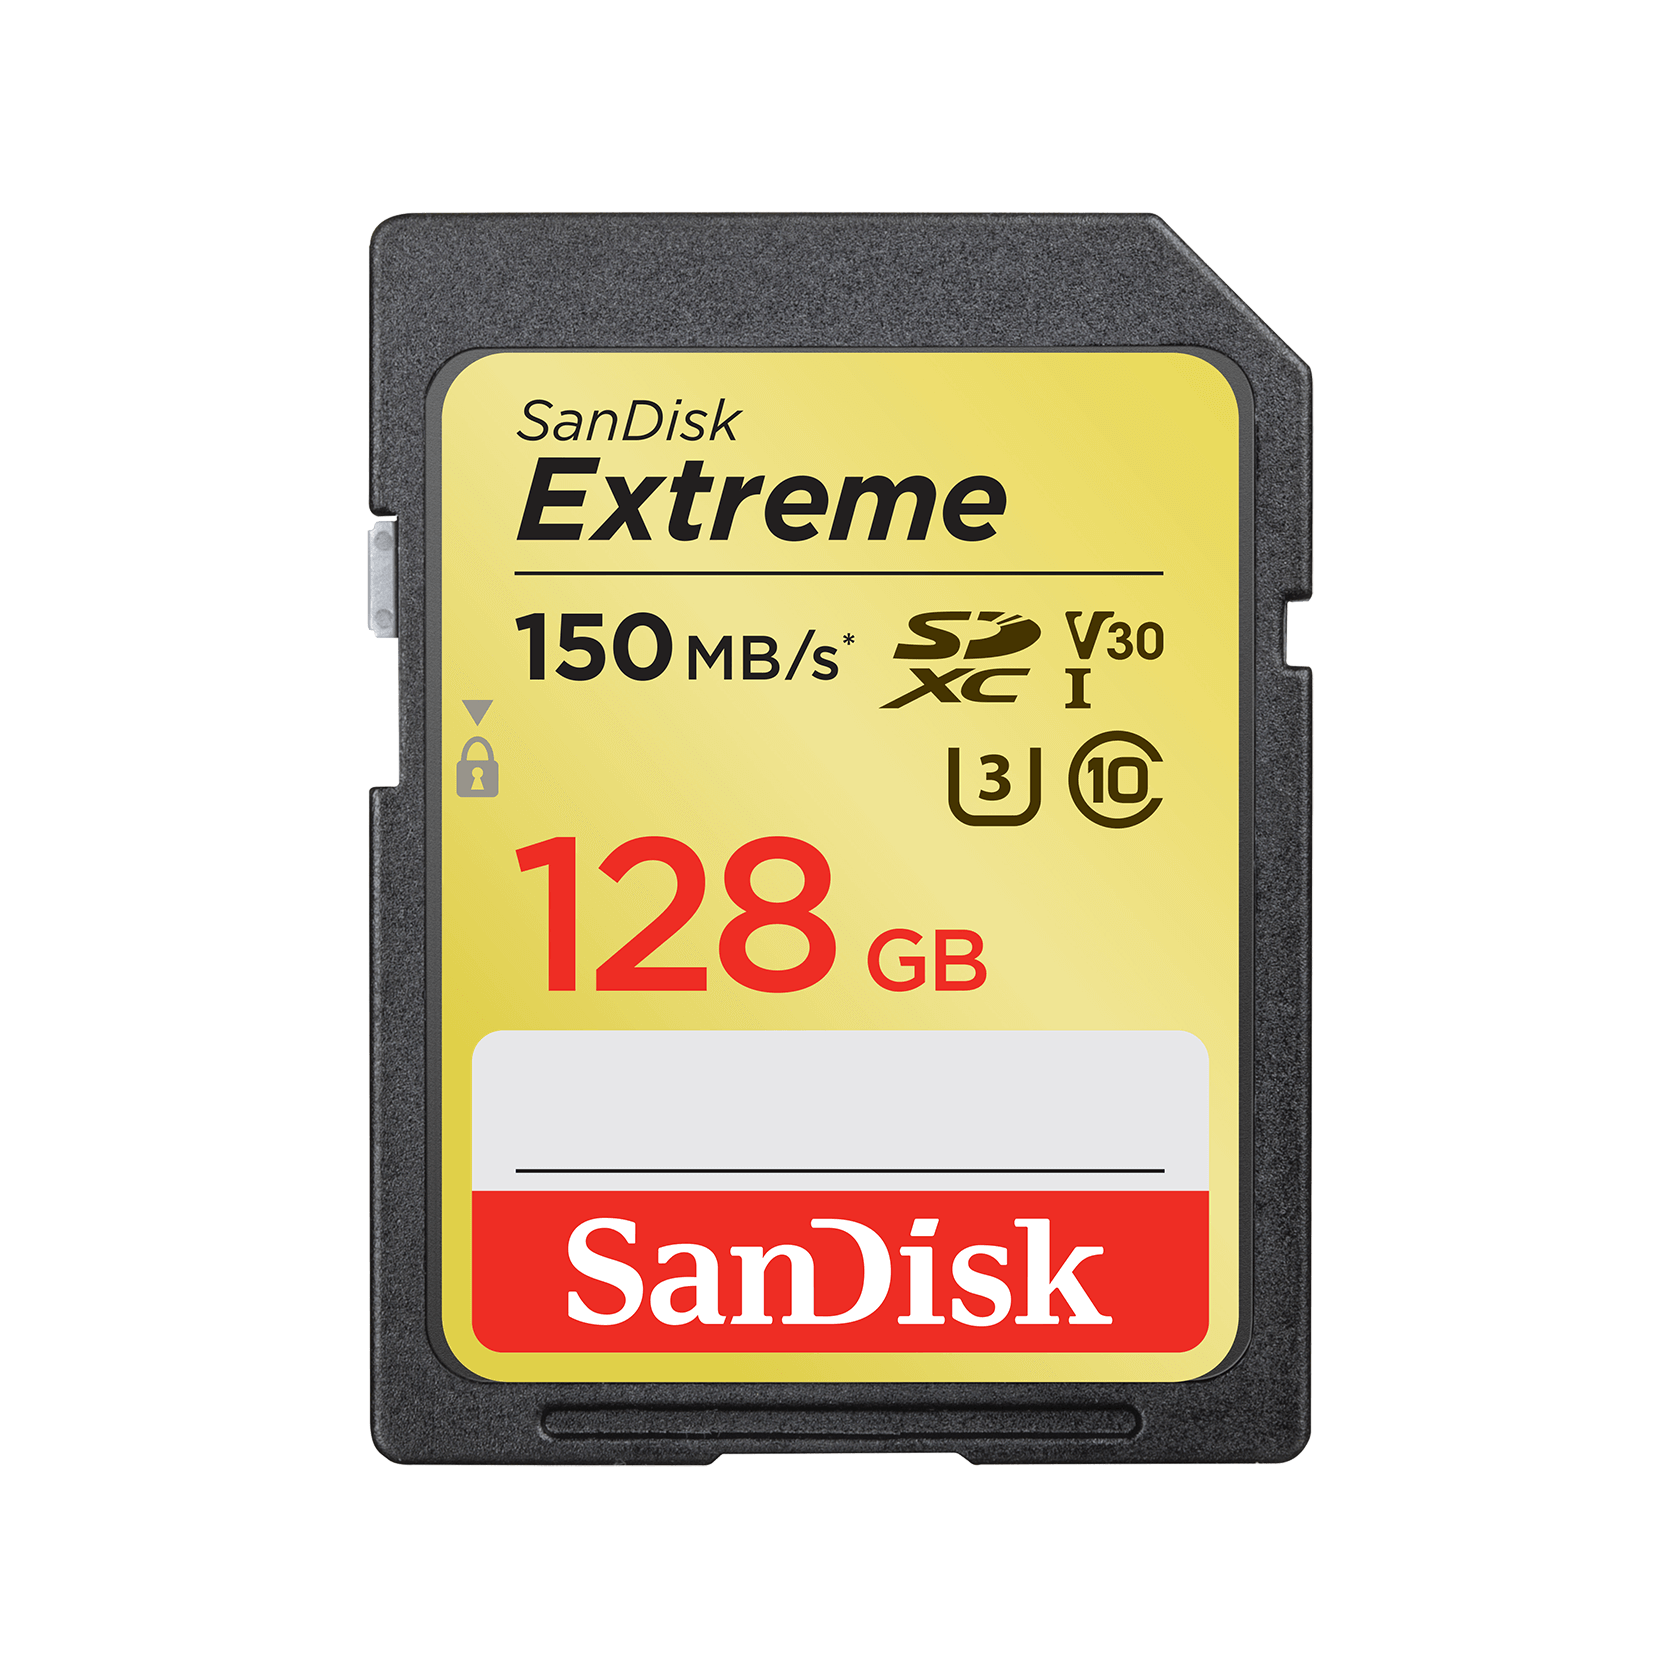 SanDisk Extreme SDHC 150MB/s UHS-I Memory Card - 128GB (C10, U3, V30) - SDSDXV5-128G-GNCIN